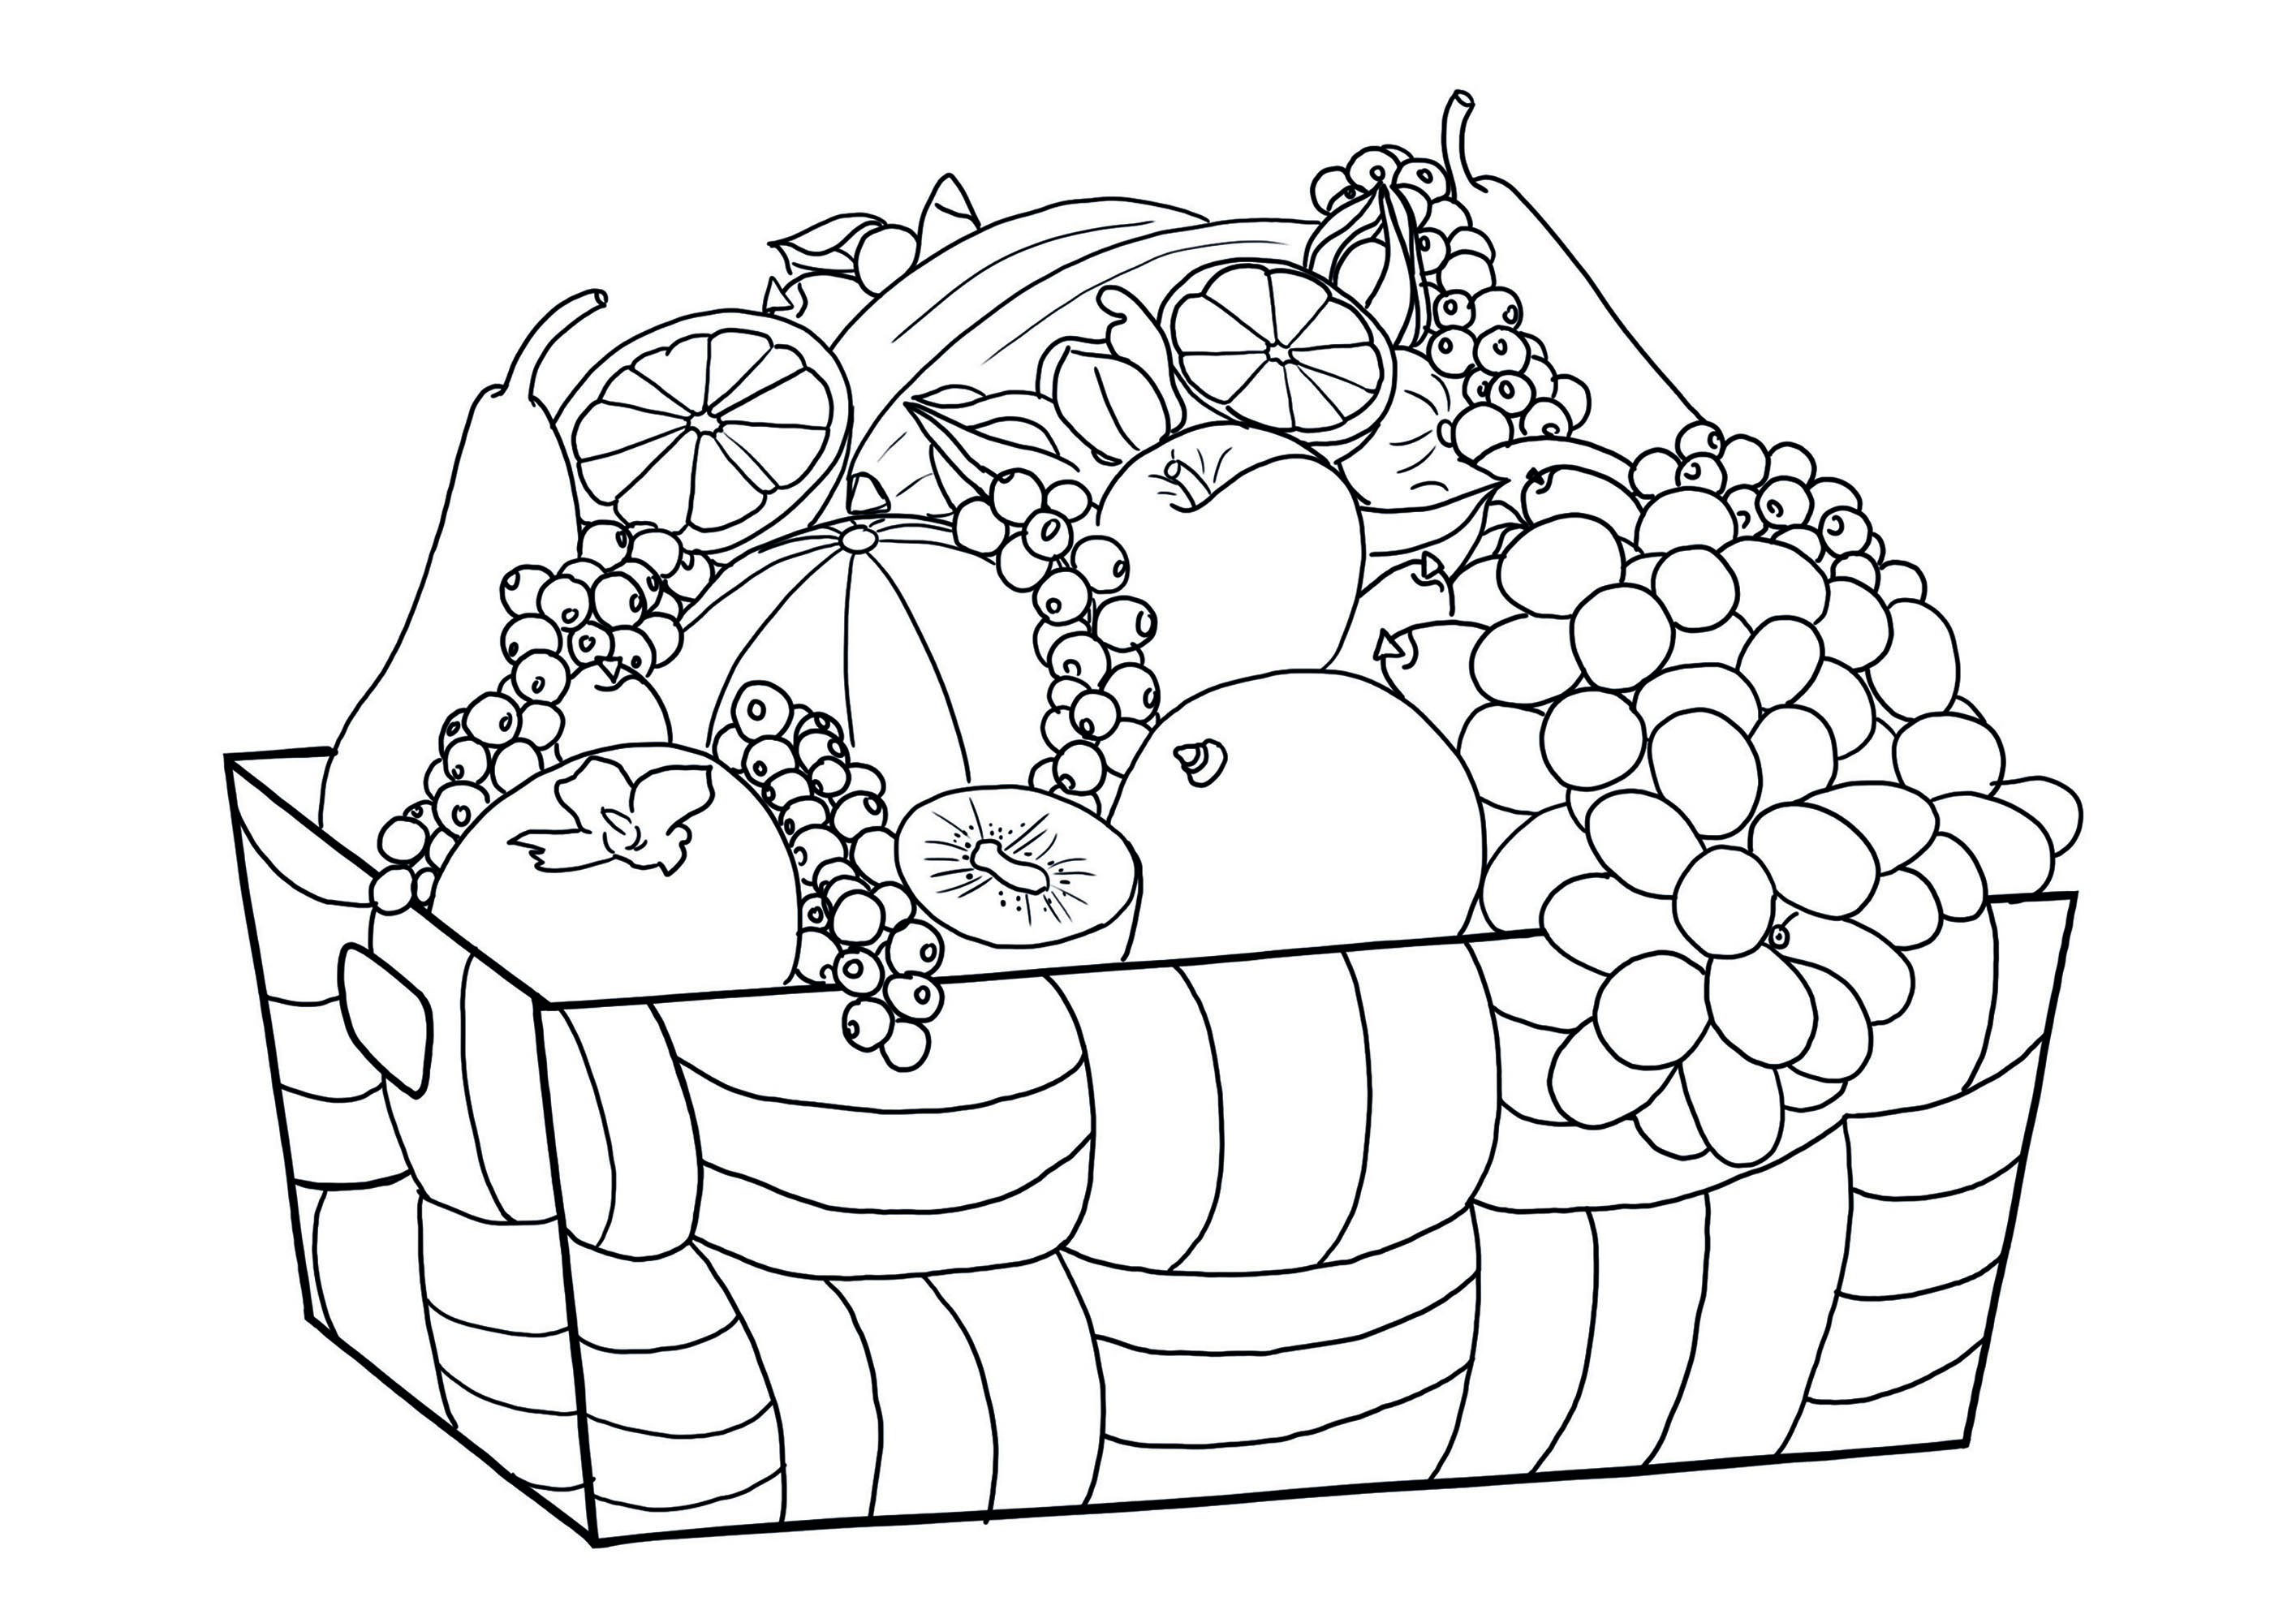 Fruit basket to color